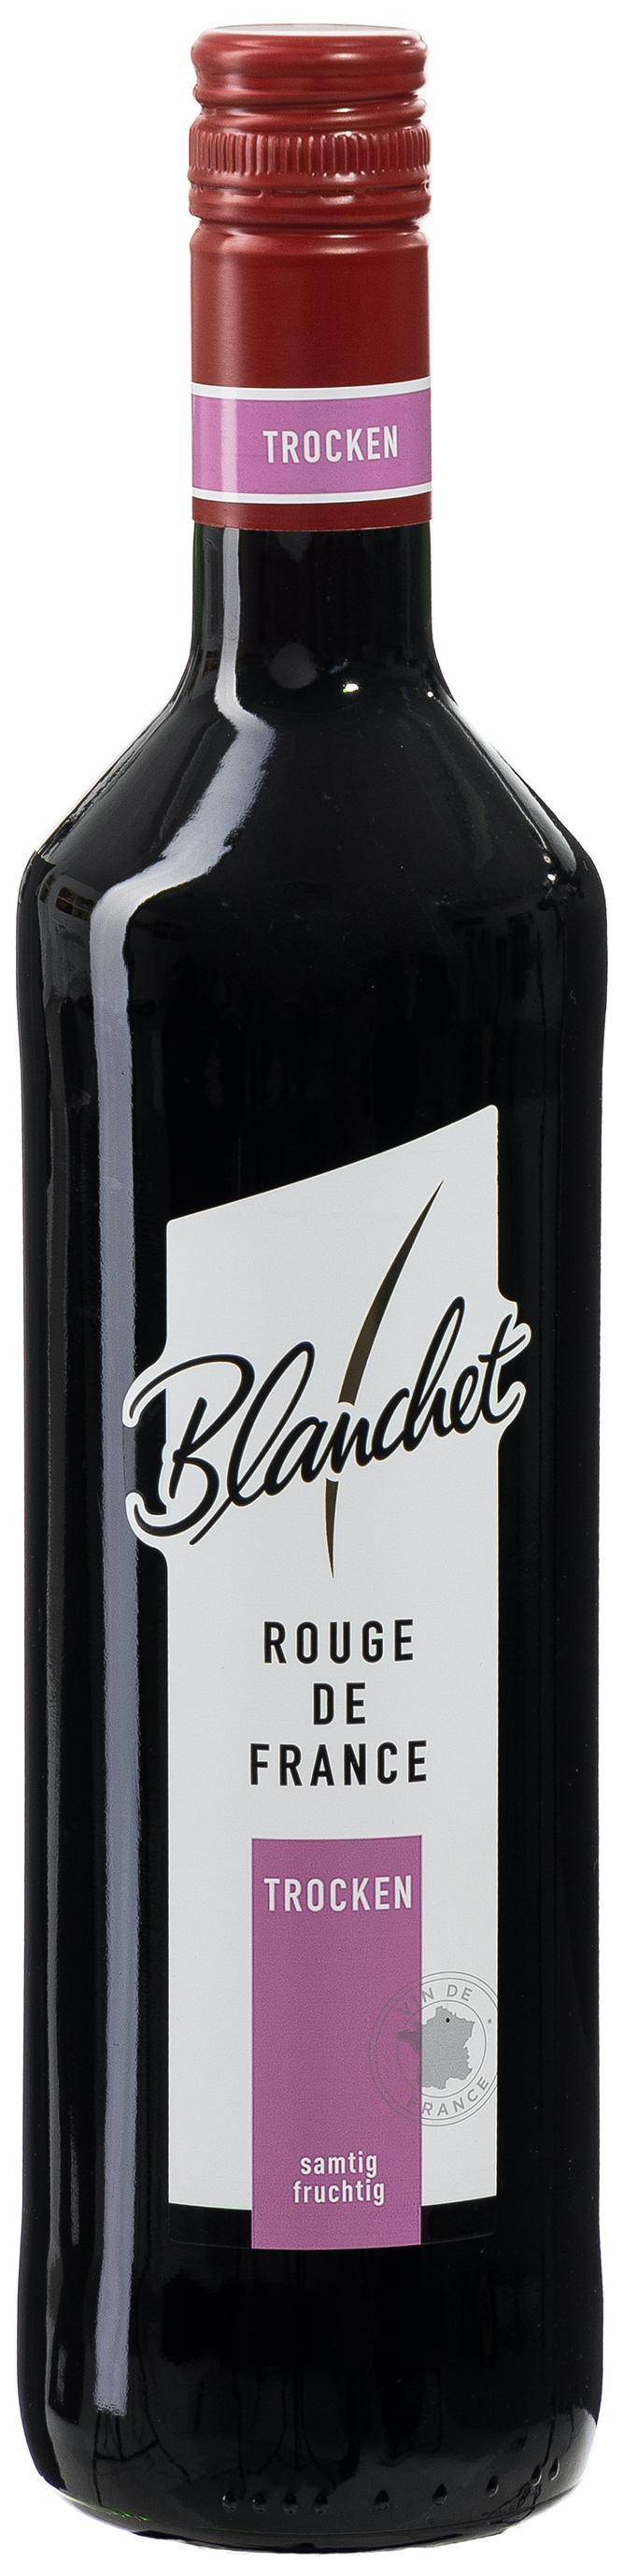 Blanchet Rouge trocken 12,5% vol. 0,75L